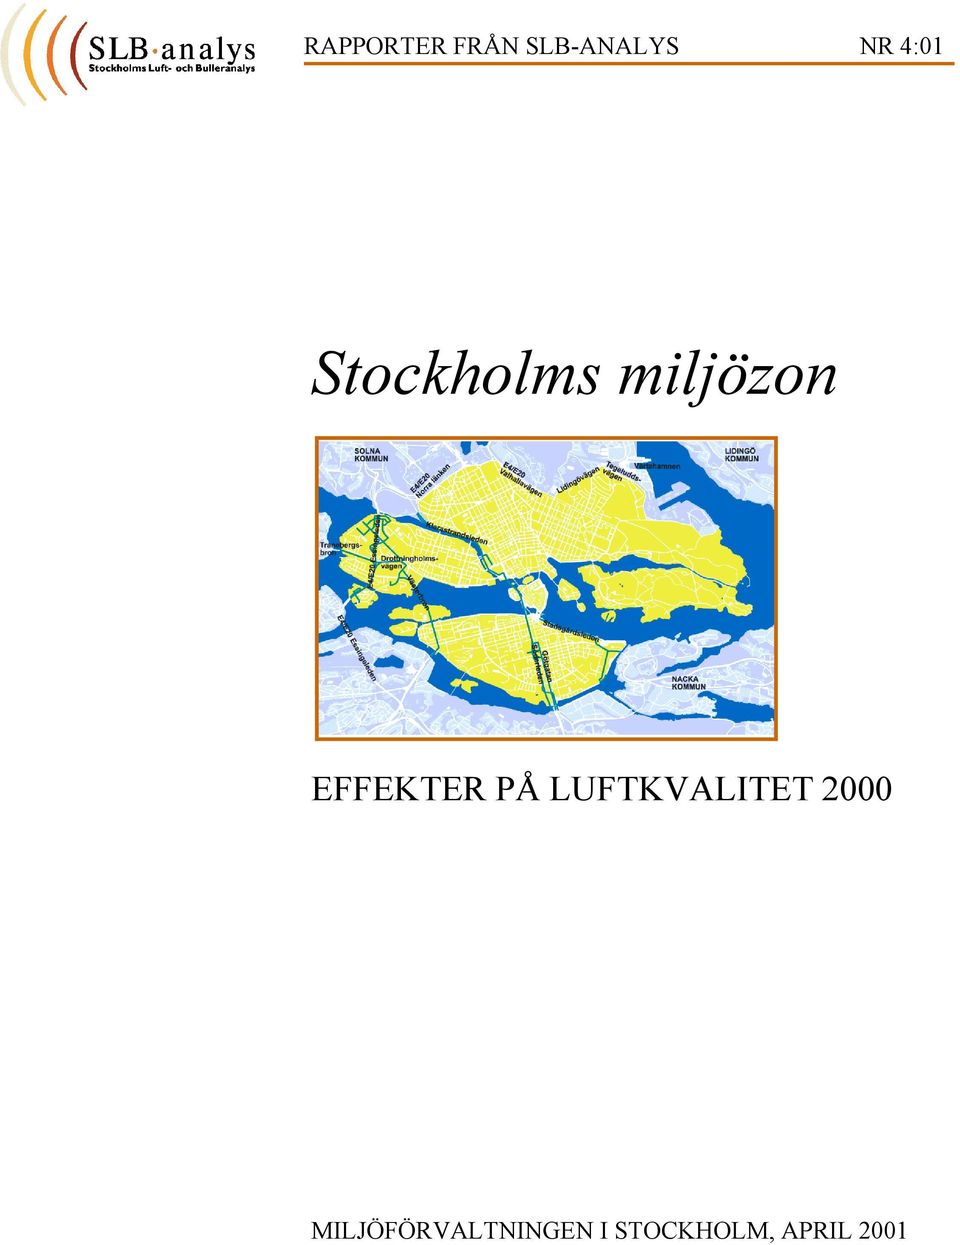 EFFEKTER PÅ LUFTKVALITET 2000